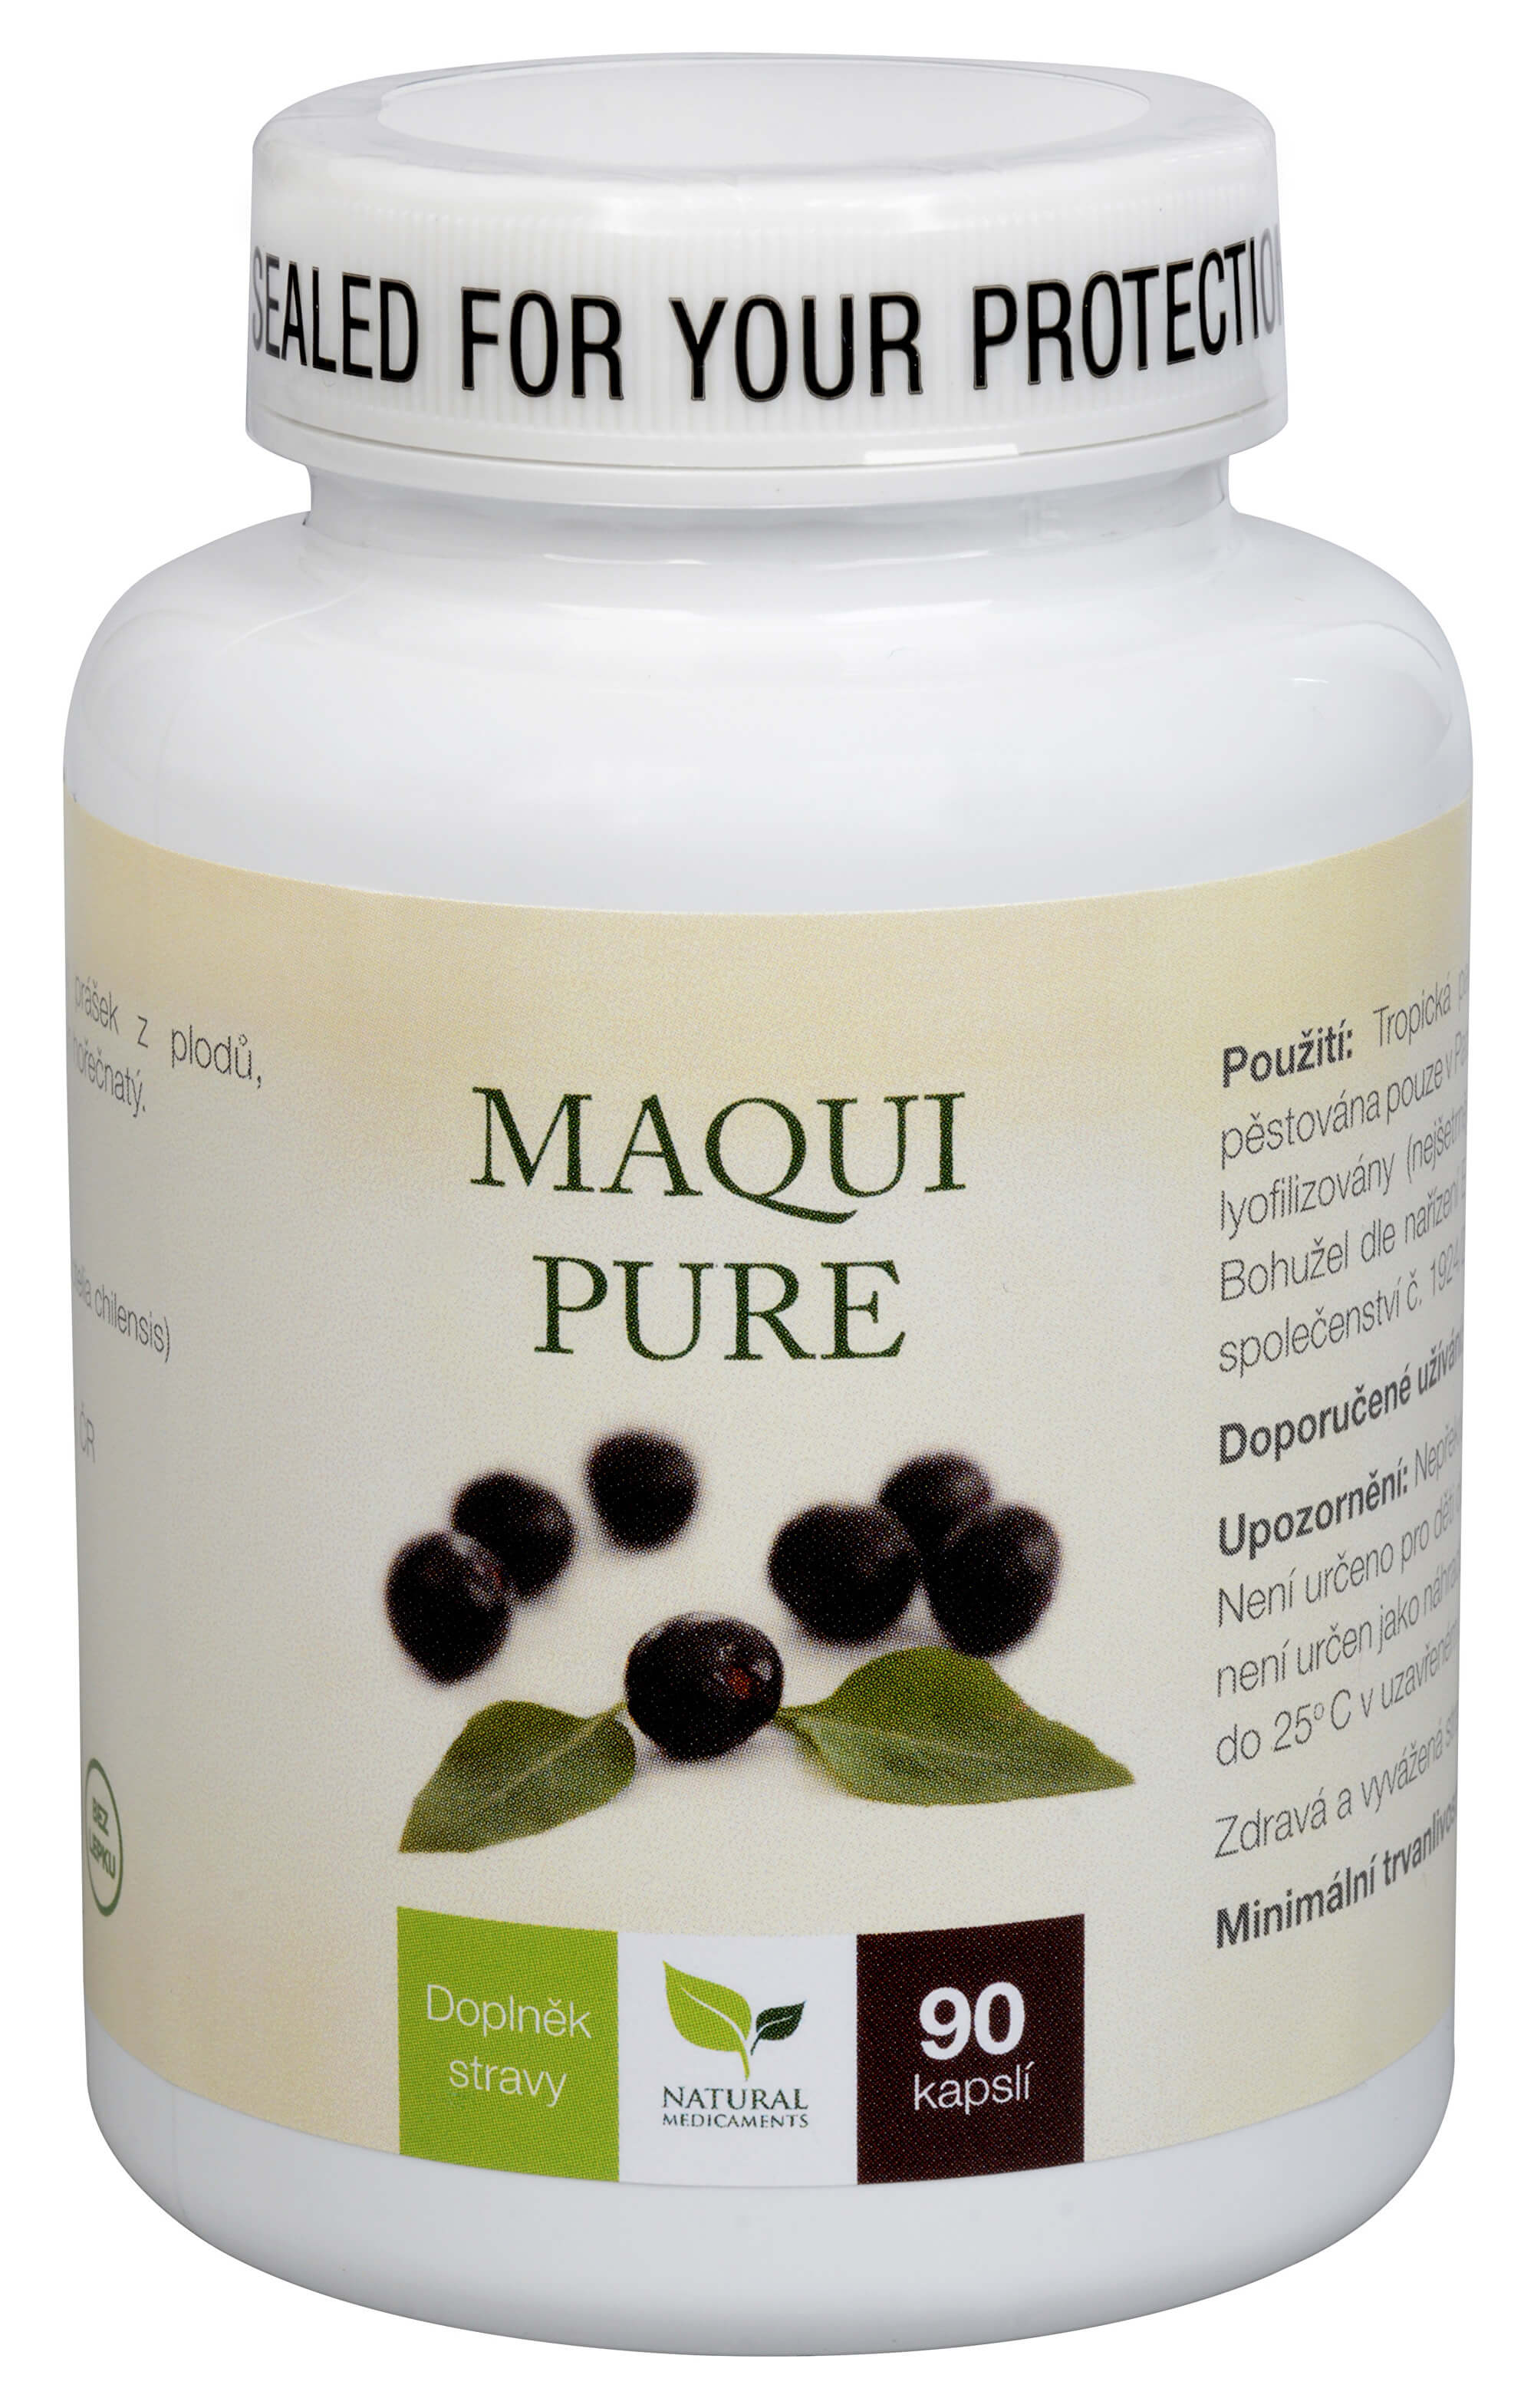 Natural Medicaments Maqui Pure 90 kapslí + 2 měsíce na vrácení zboží